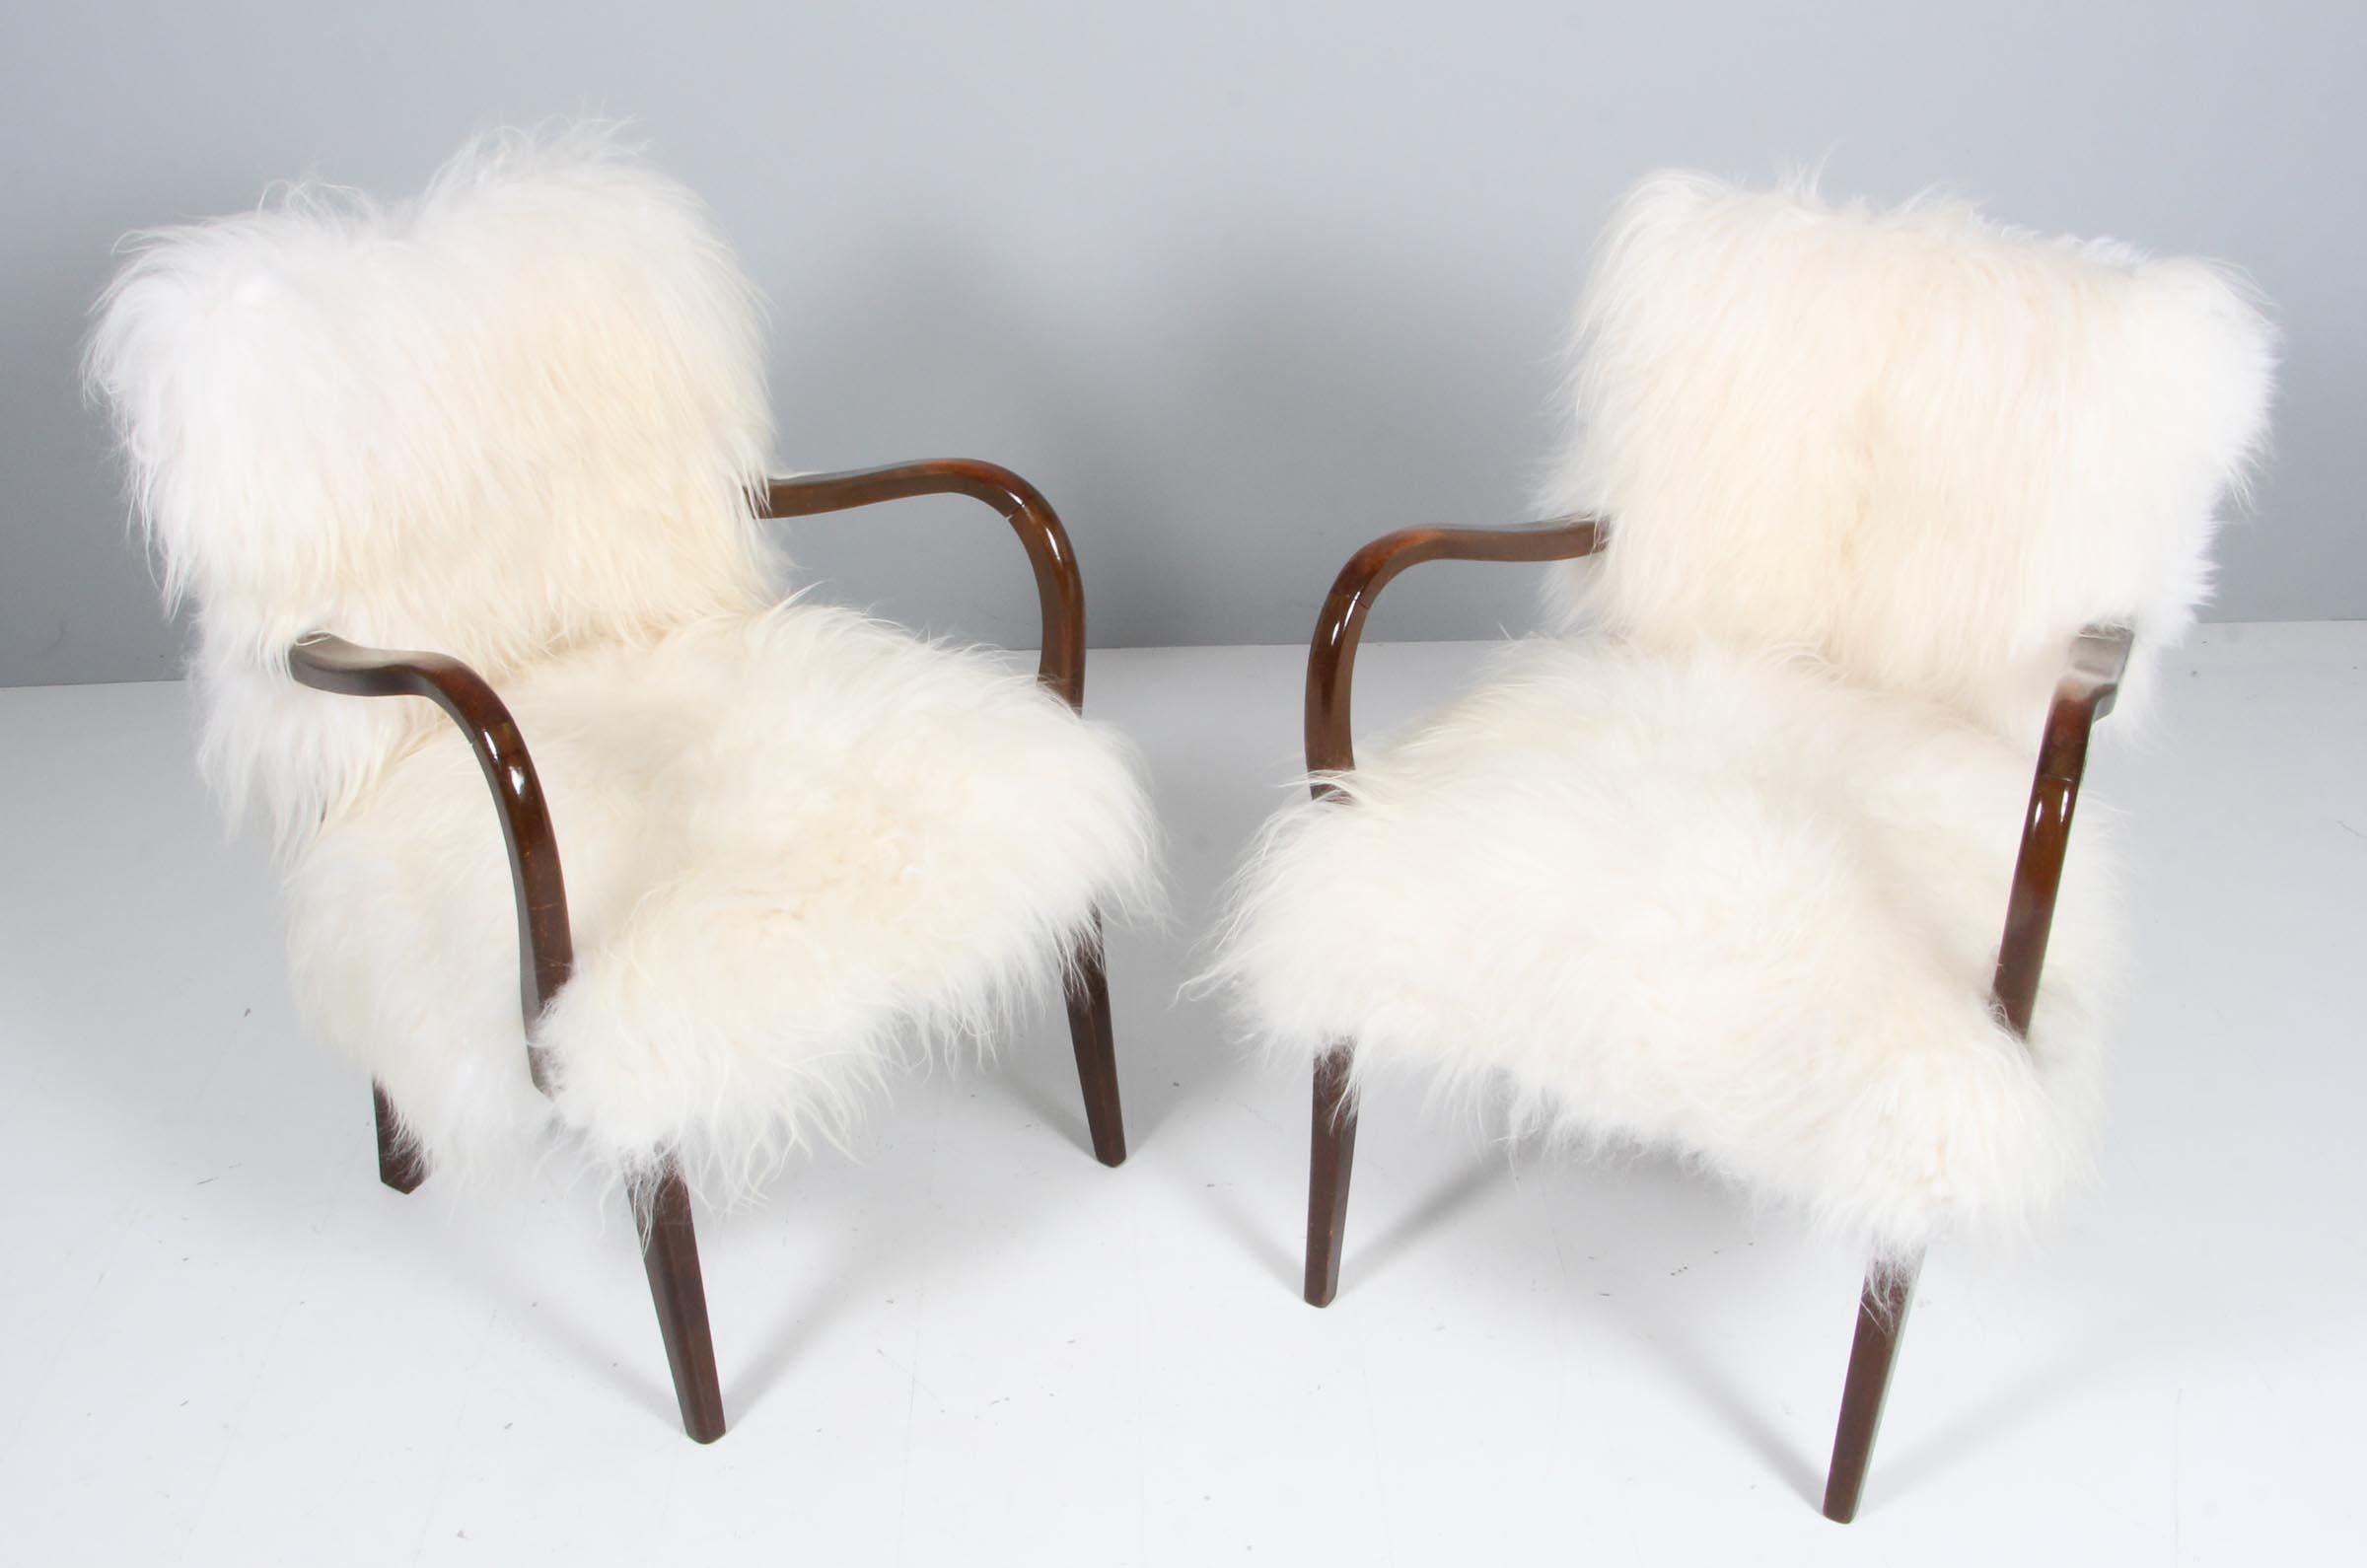 Paire de chaises des années 1940 nouvellement tapissées de peau d'agneau à poil long.

Cadre en hêtre teinté.